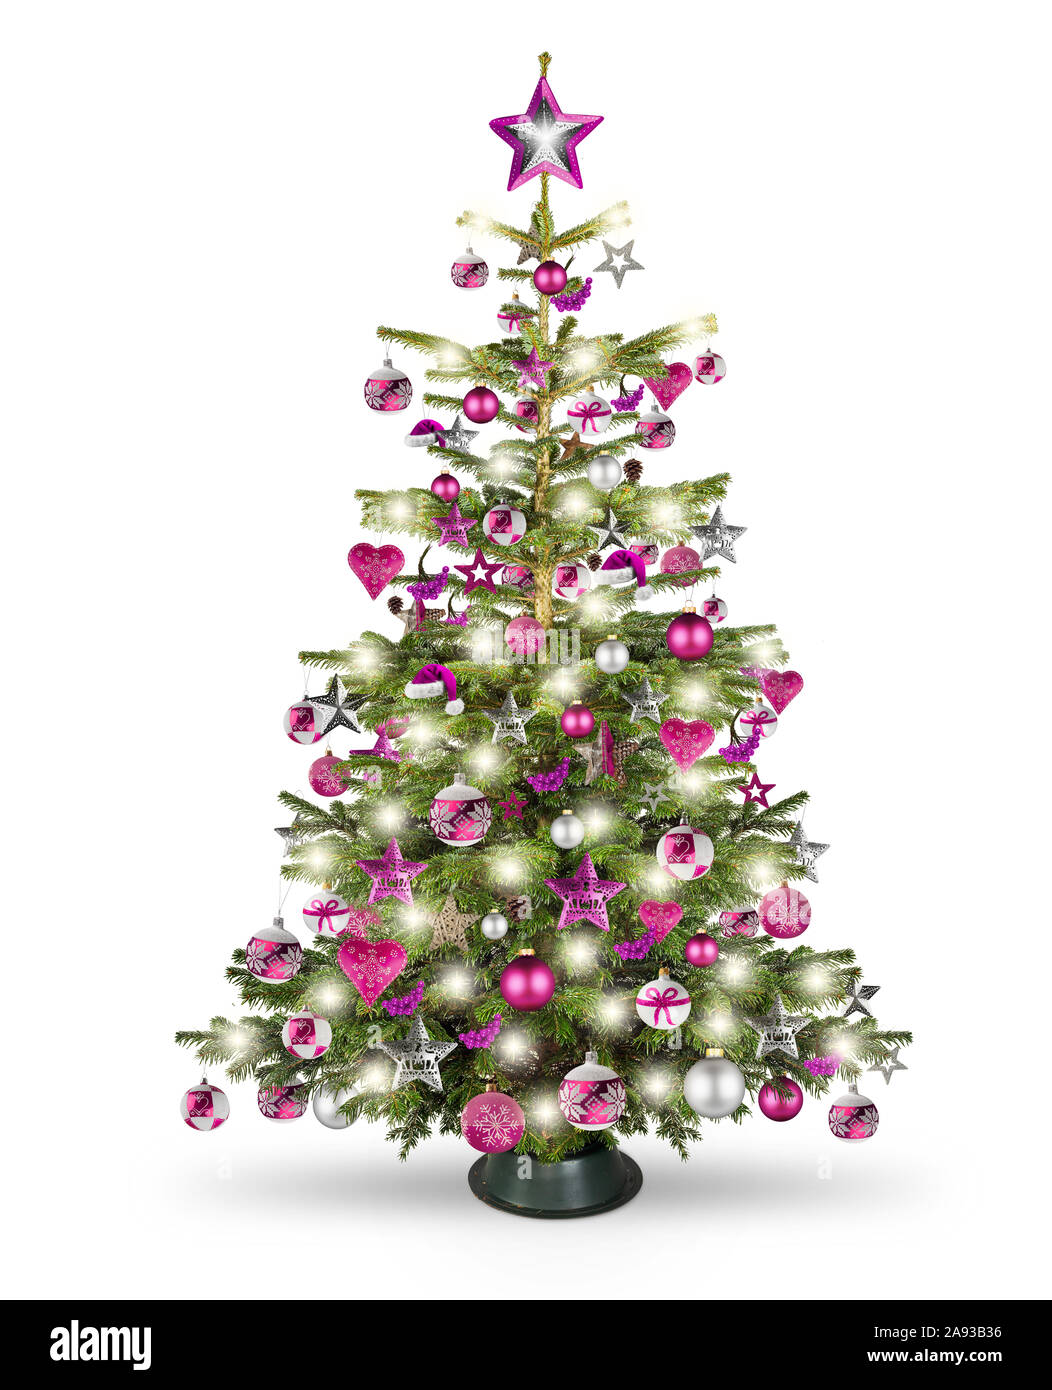 Naturale reale nordmann xmas albero di natale con il colore rosa rosso porpora argento e decorazioni in legno. ninnolo star cuore e luminosa led isolato su bianco Foto Stock